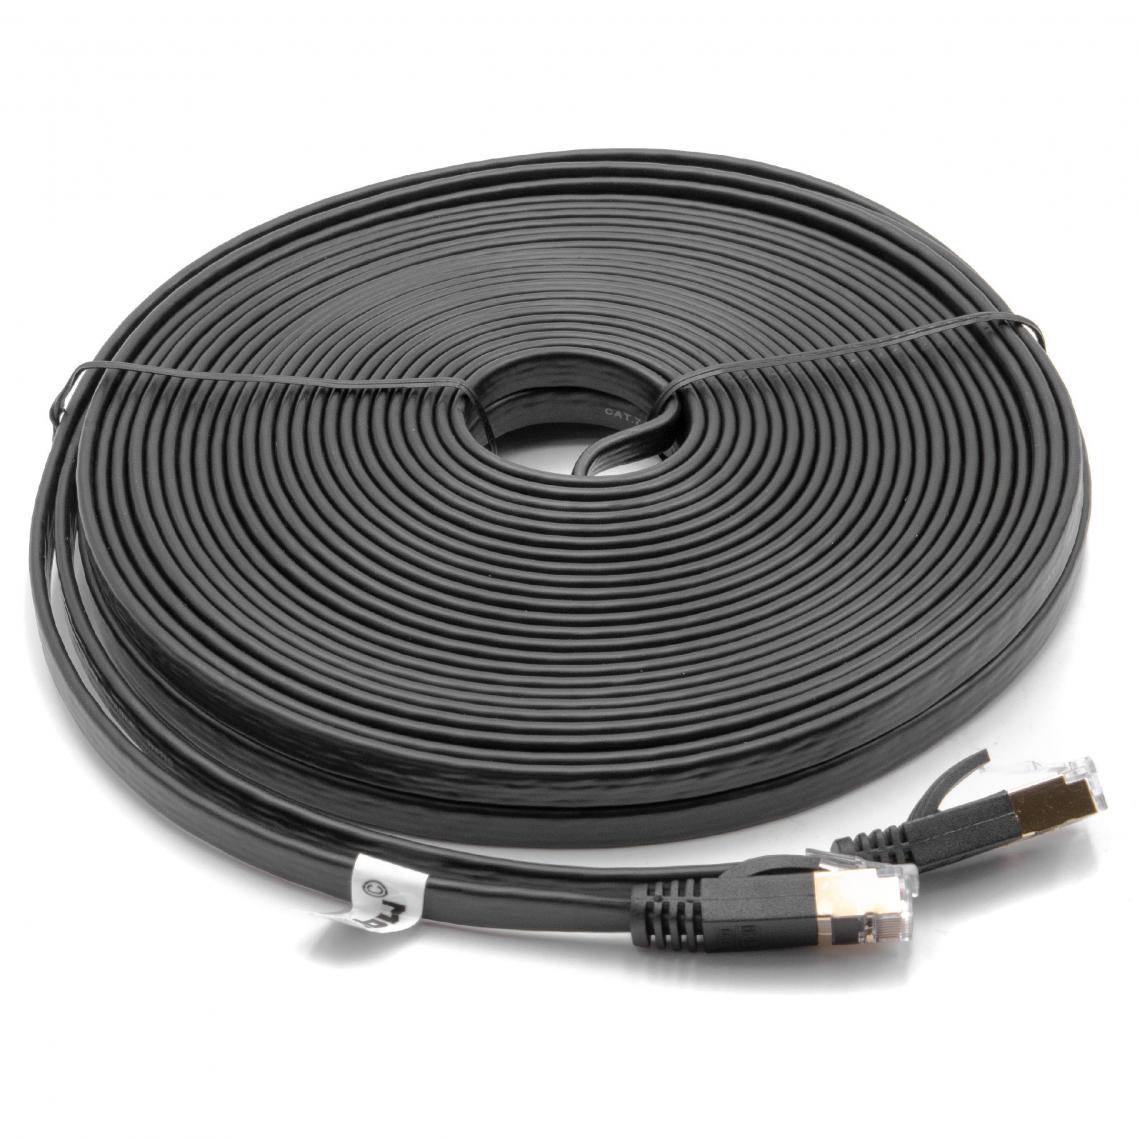 Vhbw - vhbw câble de réseau câble LAN Cat7 15m noir câble plat - Accessoires alimentation